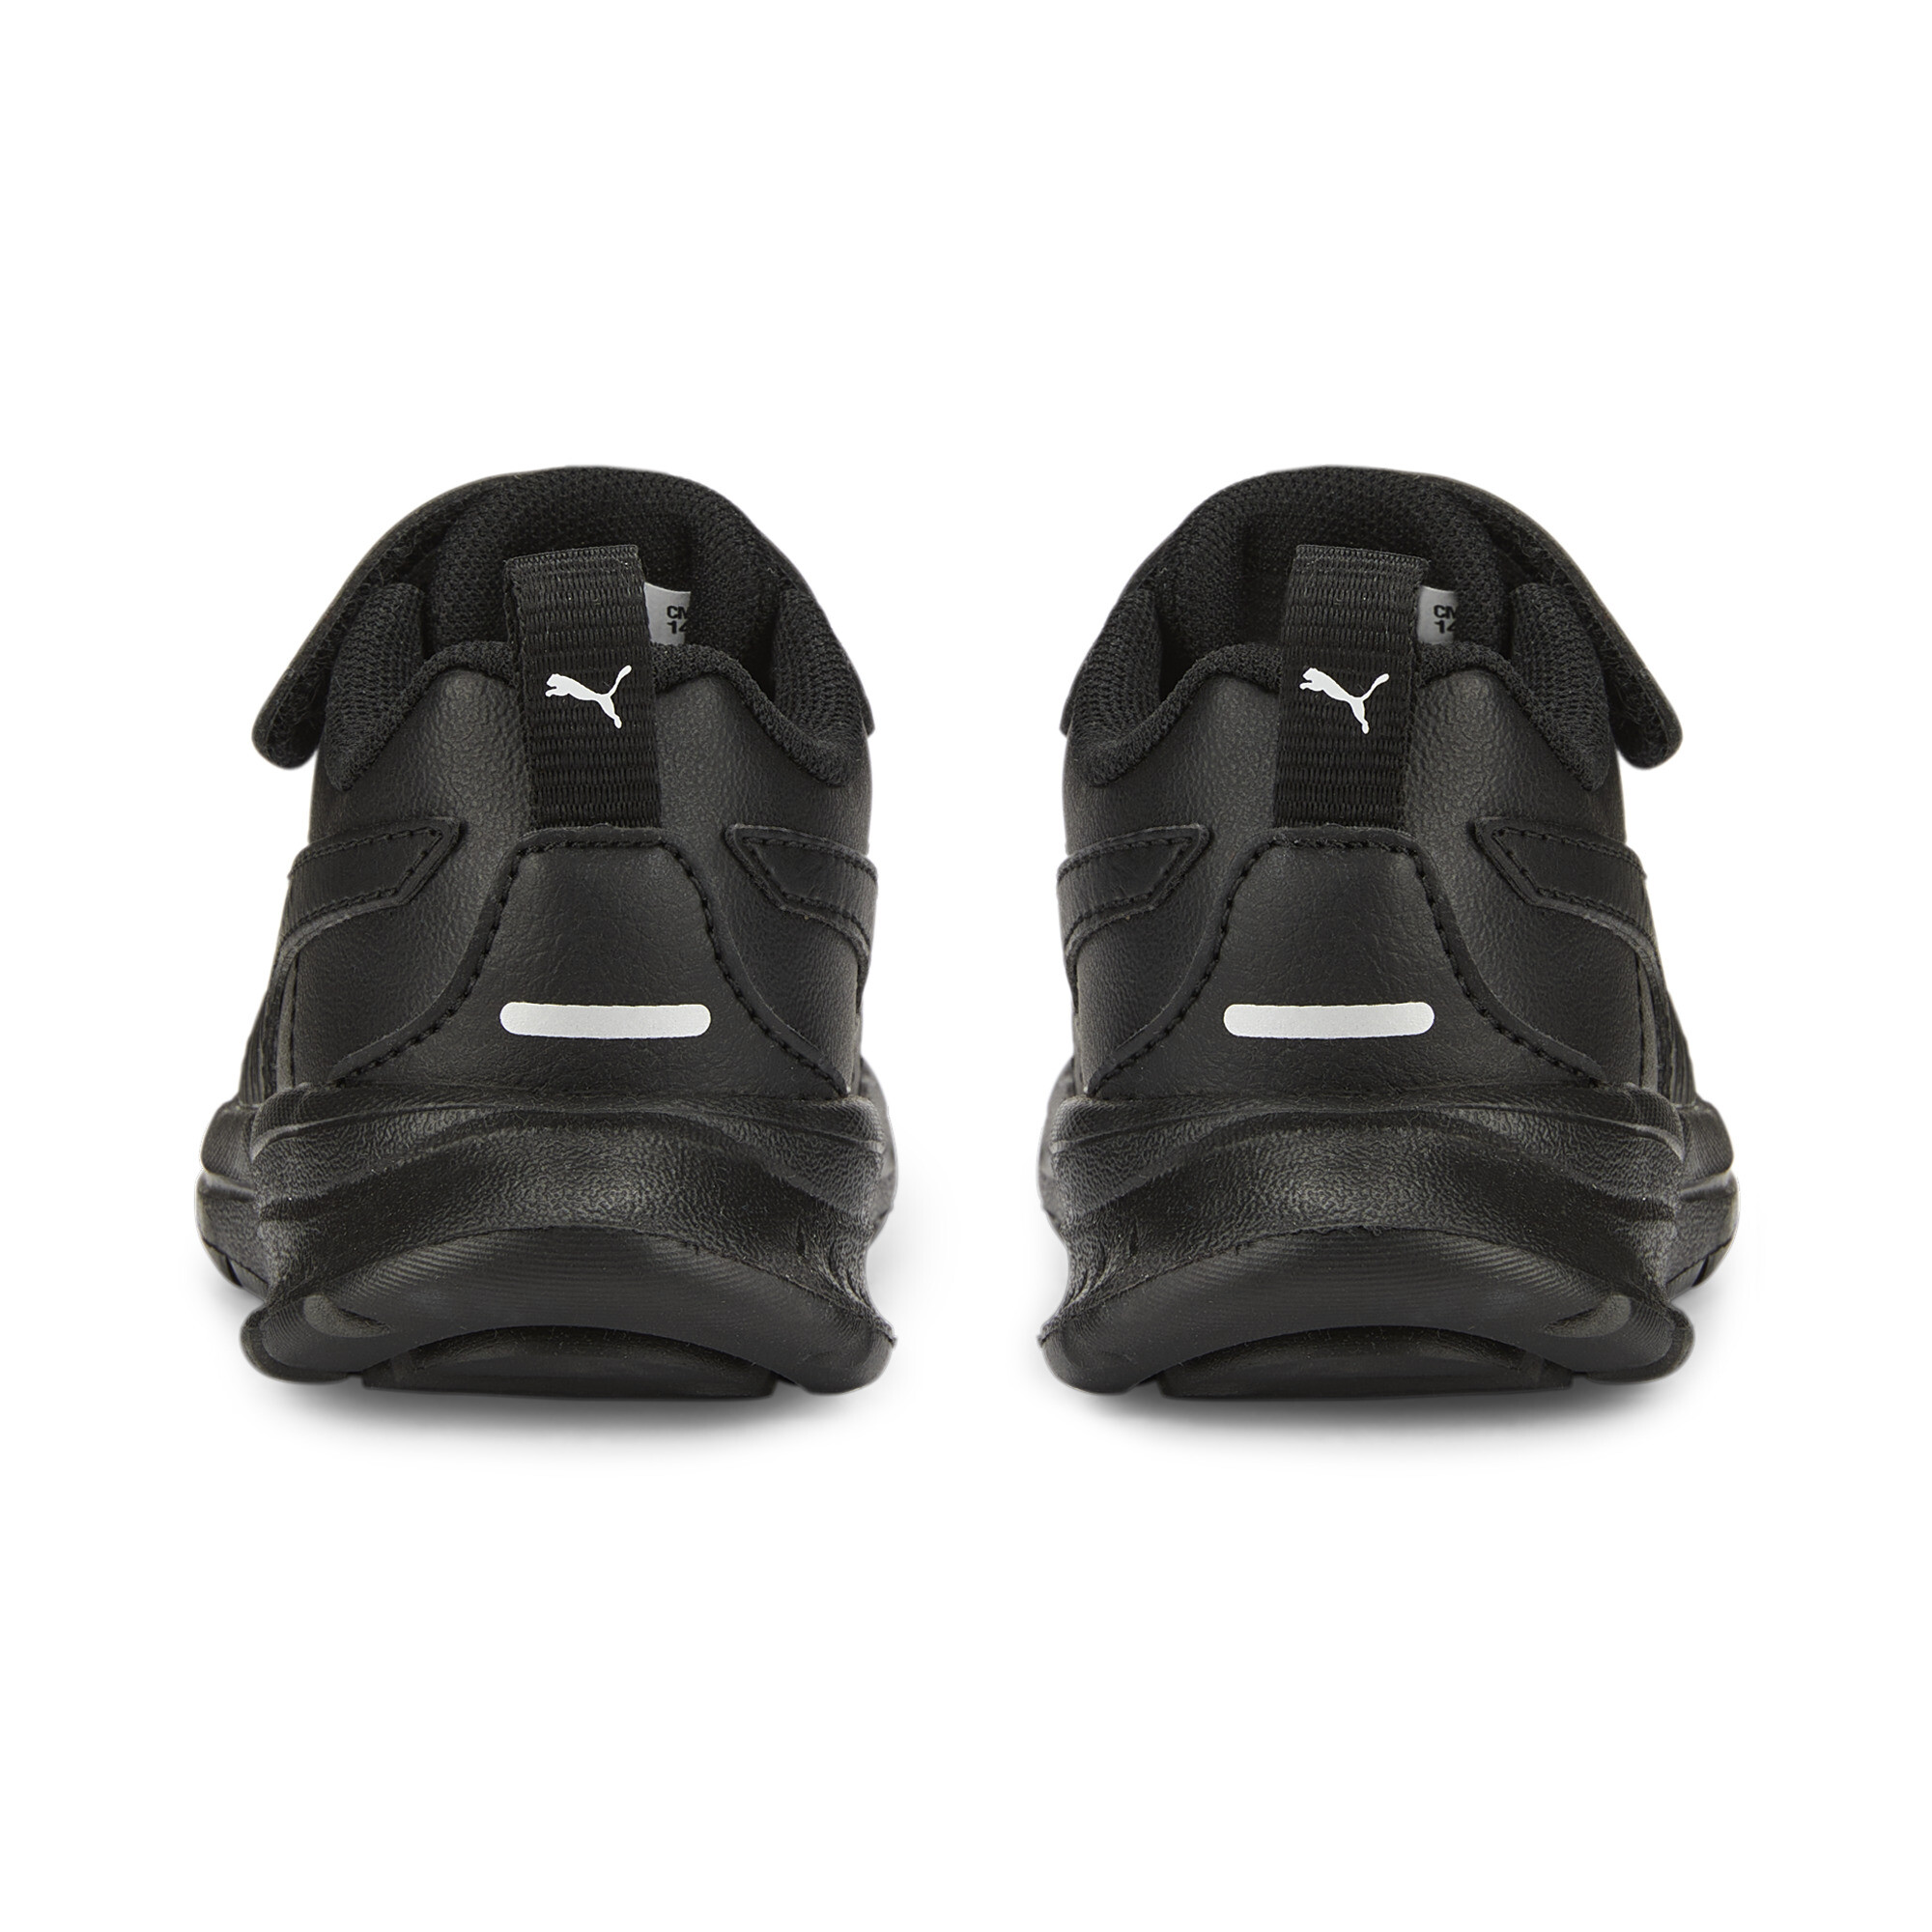 PUMA Evolve Run Superlight Alternative Closure Sneakers Babies In Black, Size EU 20